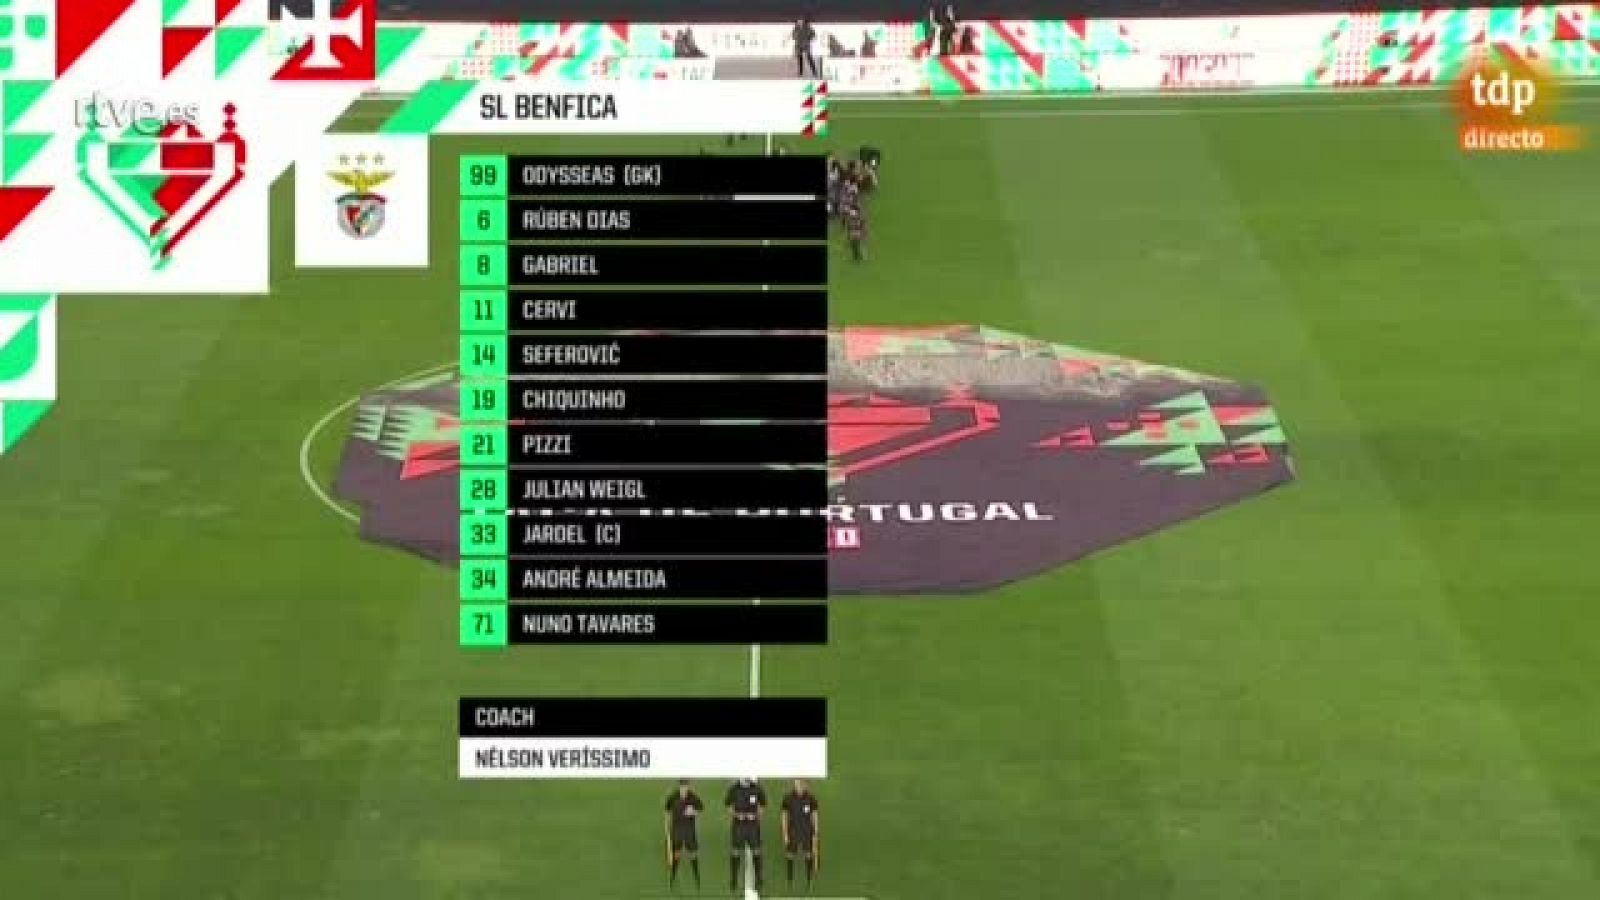 Vídeo: Resumen final Copa Portugal | Oporto 2-1 Benfica